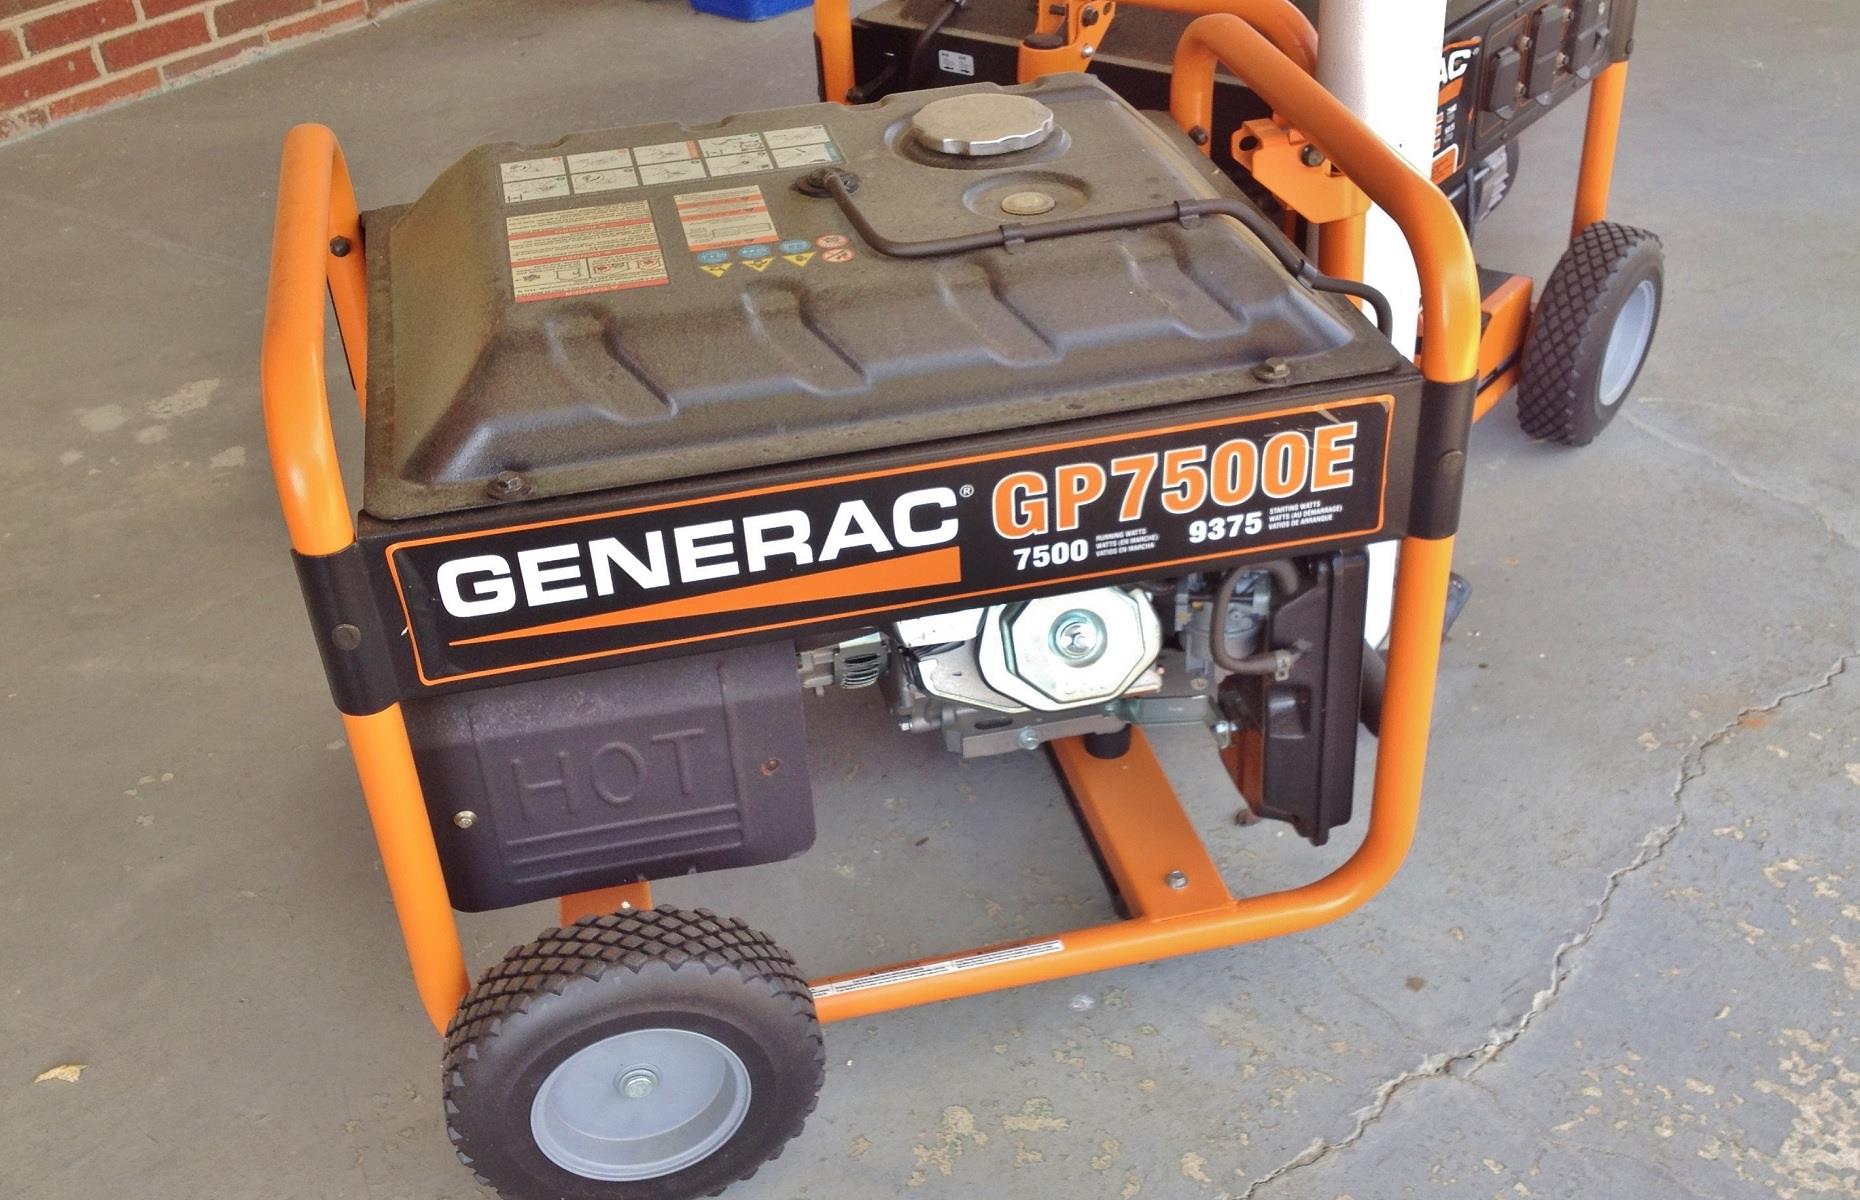 Generac portable generators: 321,160 units